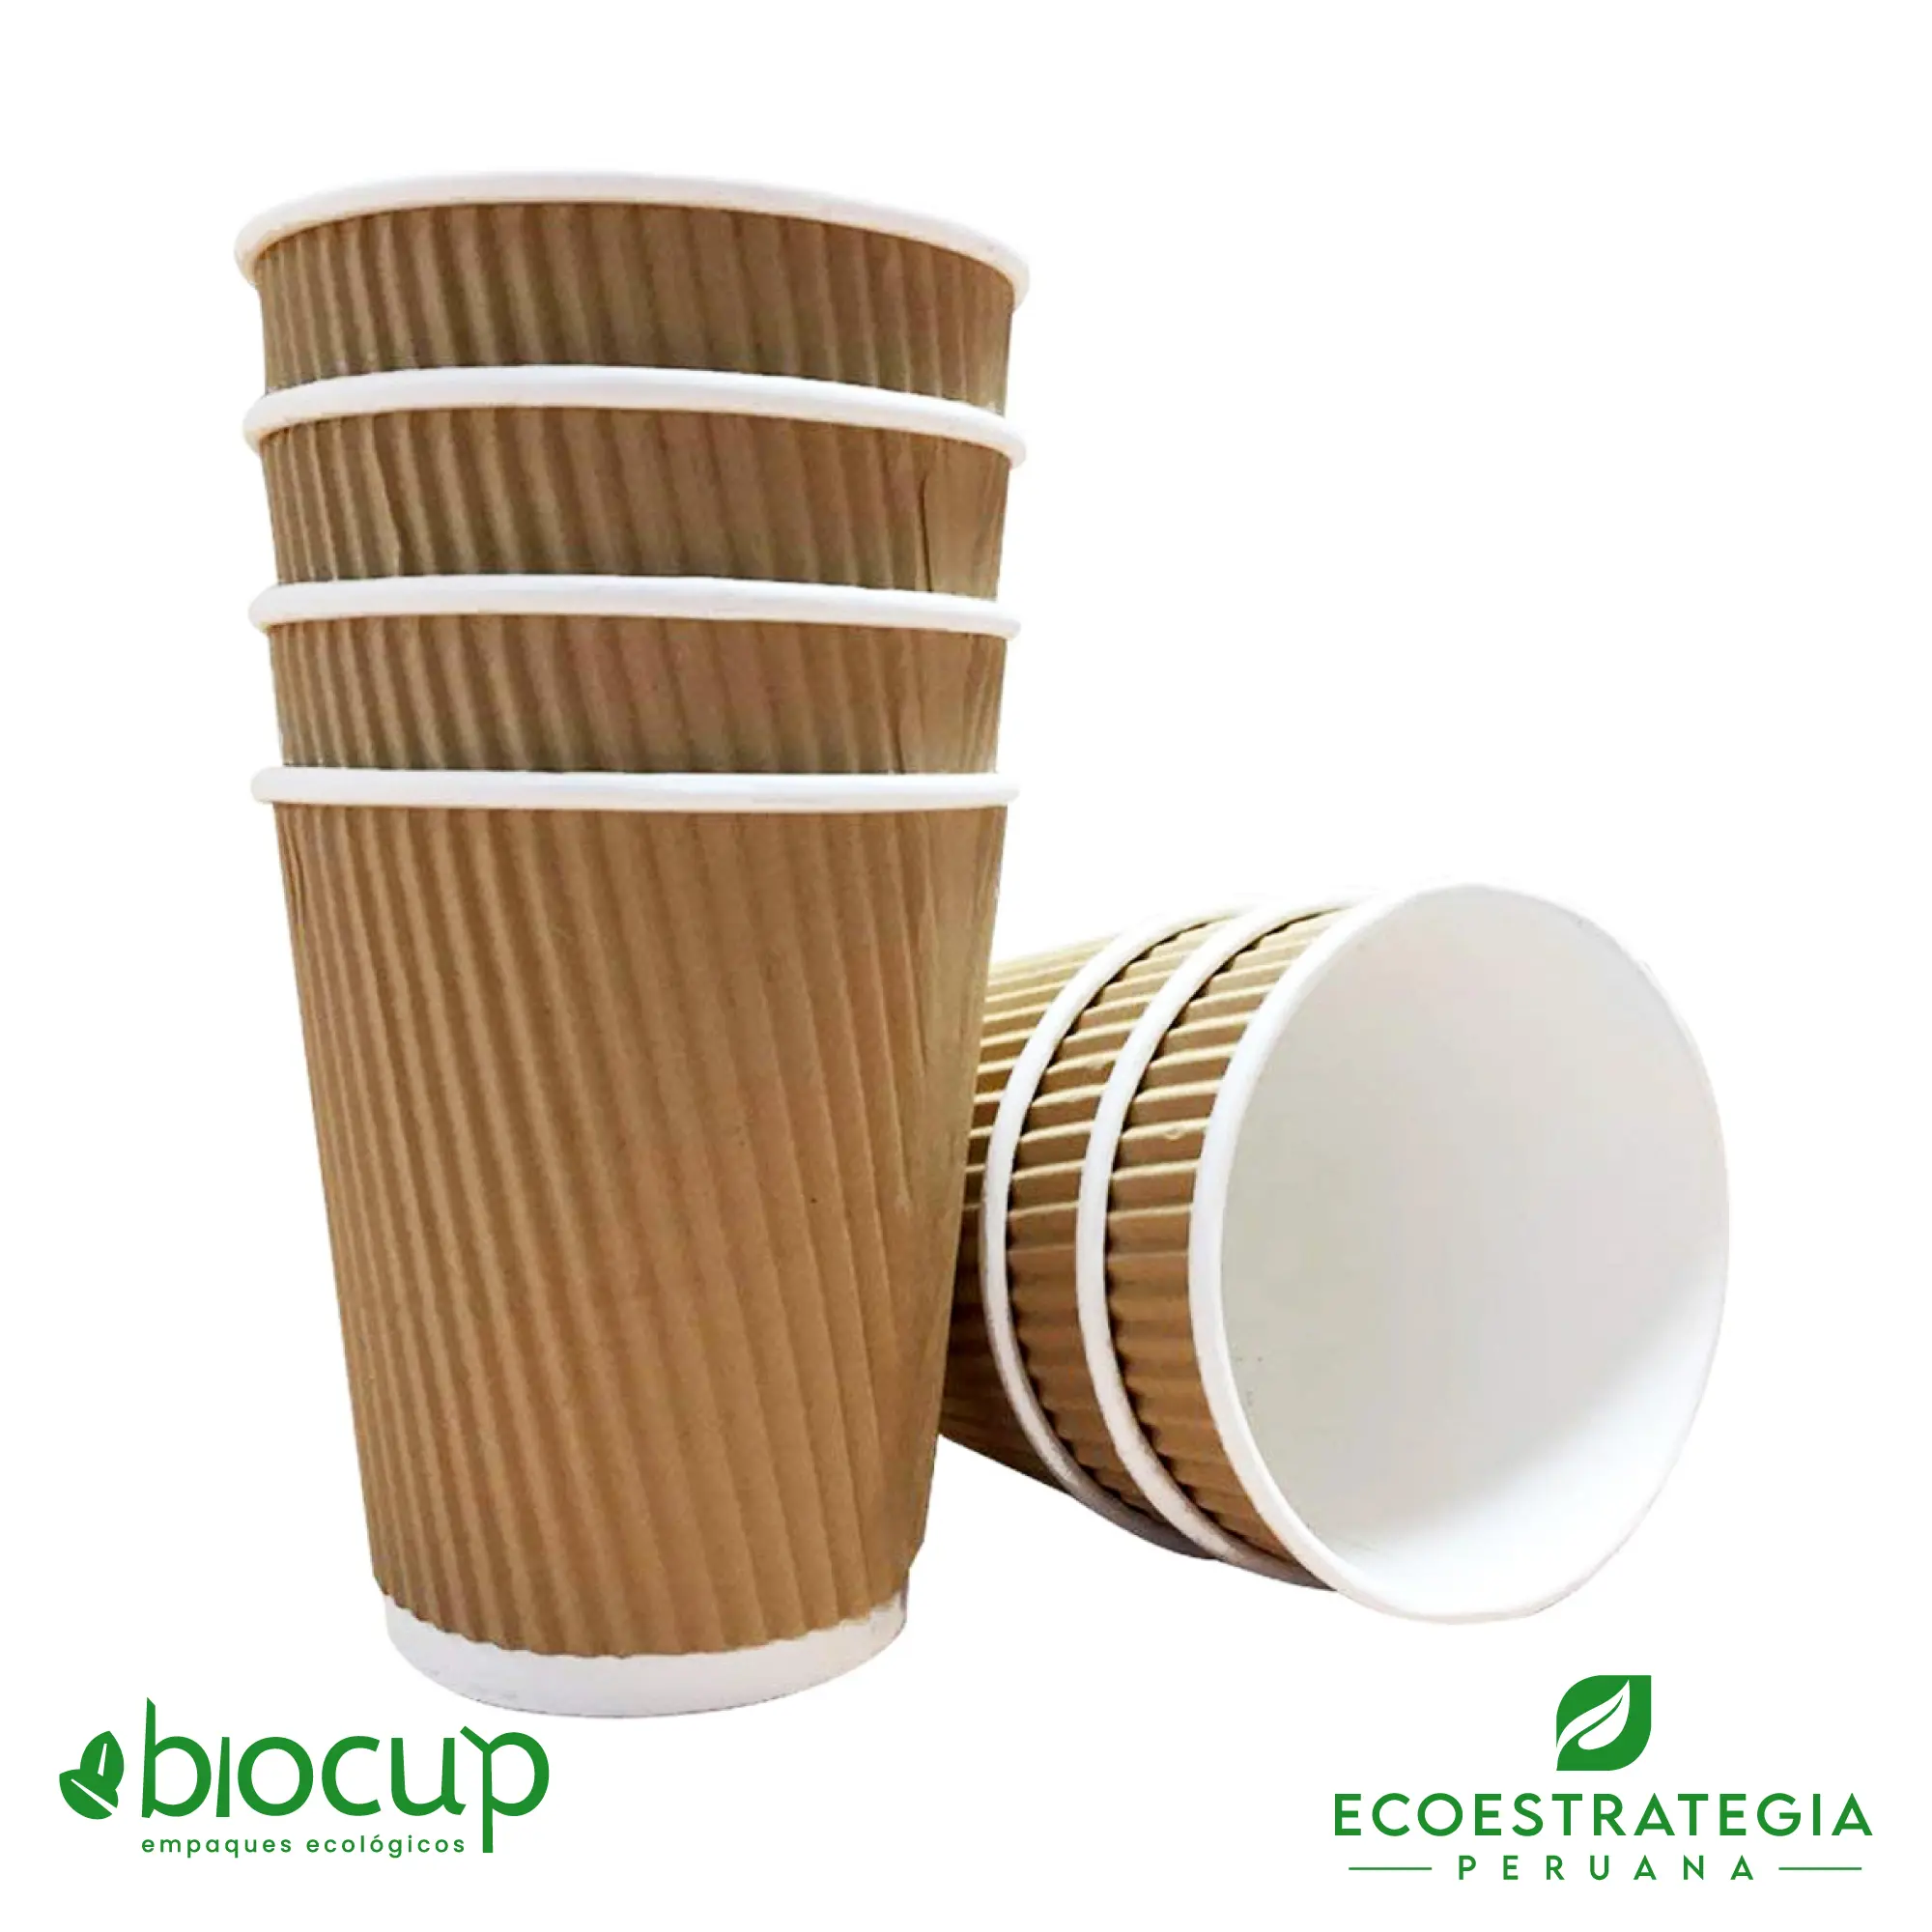 Vasos reciclable para bebidas calientes EP-BC12 también conocido como
                                            vasos corrugados 12 oz bambú, vasos corrugados biodegradables, vasos
                                            corrugados al por mayor, vasos corrugados biodegradables Perú, vasos
                                            biodegradables 12oz, vasos corrugados personalizable, vasos biodegradables
                                            con tapa 8oz, vasos biodegradables material, vasos biodegradables 12 oz
                                            precio, vasos para bebidas calientes 12 oz, vasos ecológicos 12 oz, vasos
                                            compostables 12 oz, vasos sostenibles 12 oz, vaso liso bioform 12 oz, vaso
                                            ripple 12 oz, vaso eco cup 12 oz, importador de vasos corrugado, fabricante
                                            de vasos corrugados, distribuidores de vasos corrugados, mayoristas de vasos
                                            corrugados, vasos corrugados lima Perú